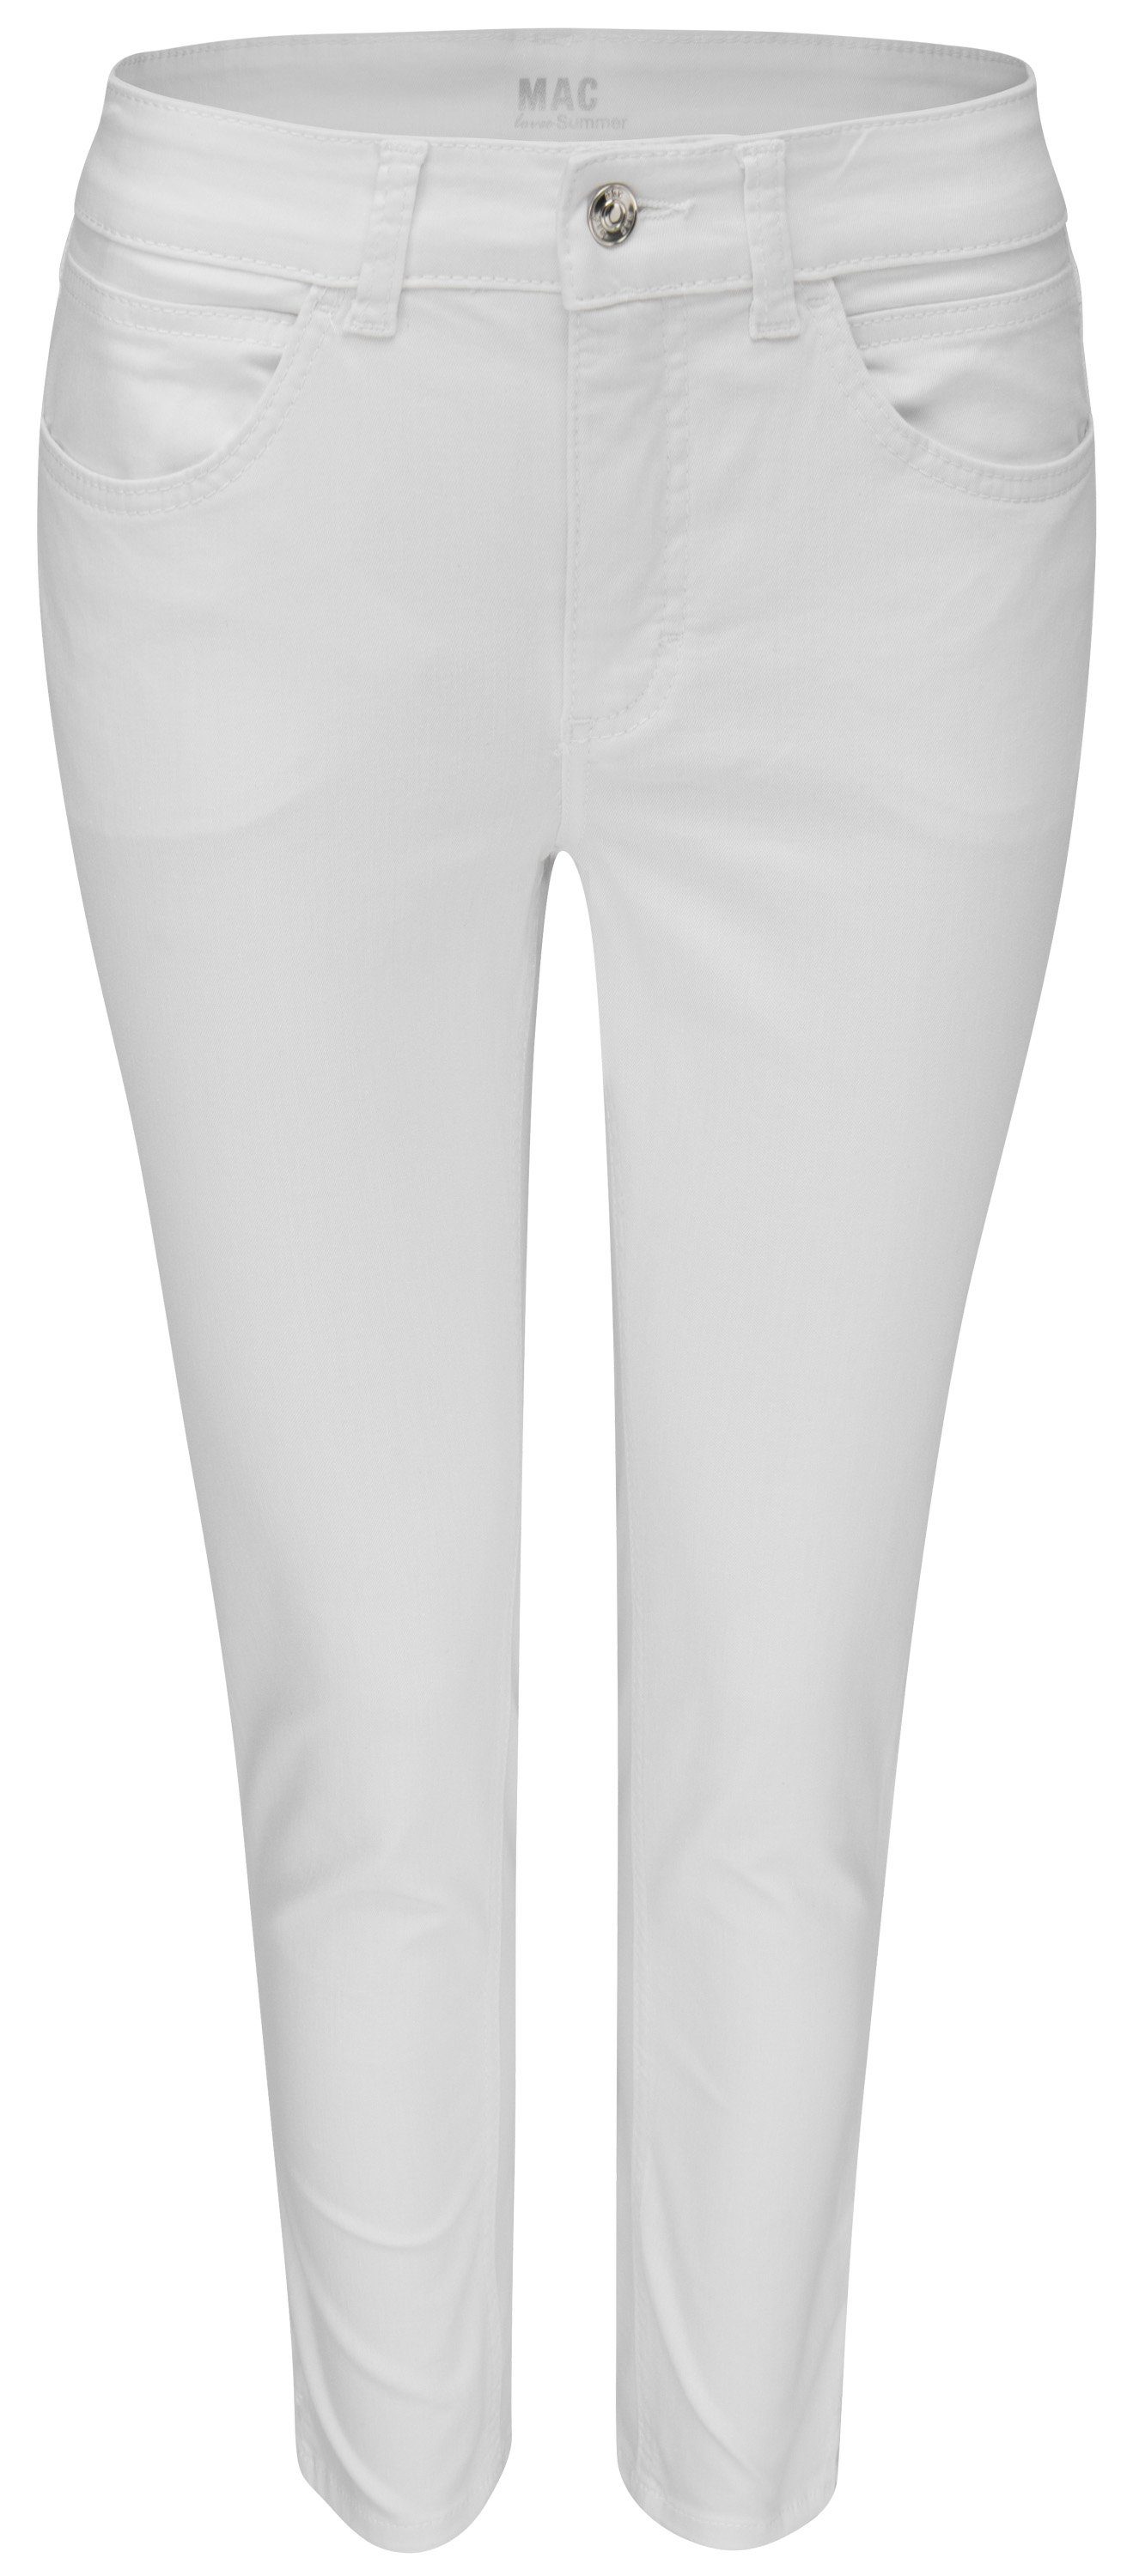 MAC Stretch-Jeans MAC ANGELA 7/8 SUMMER nature white denim 5260-90-0394 D010